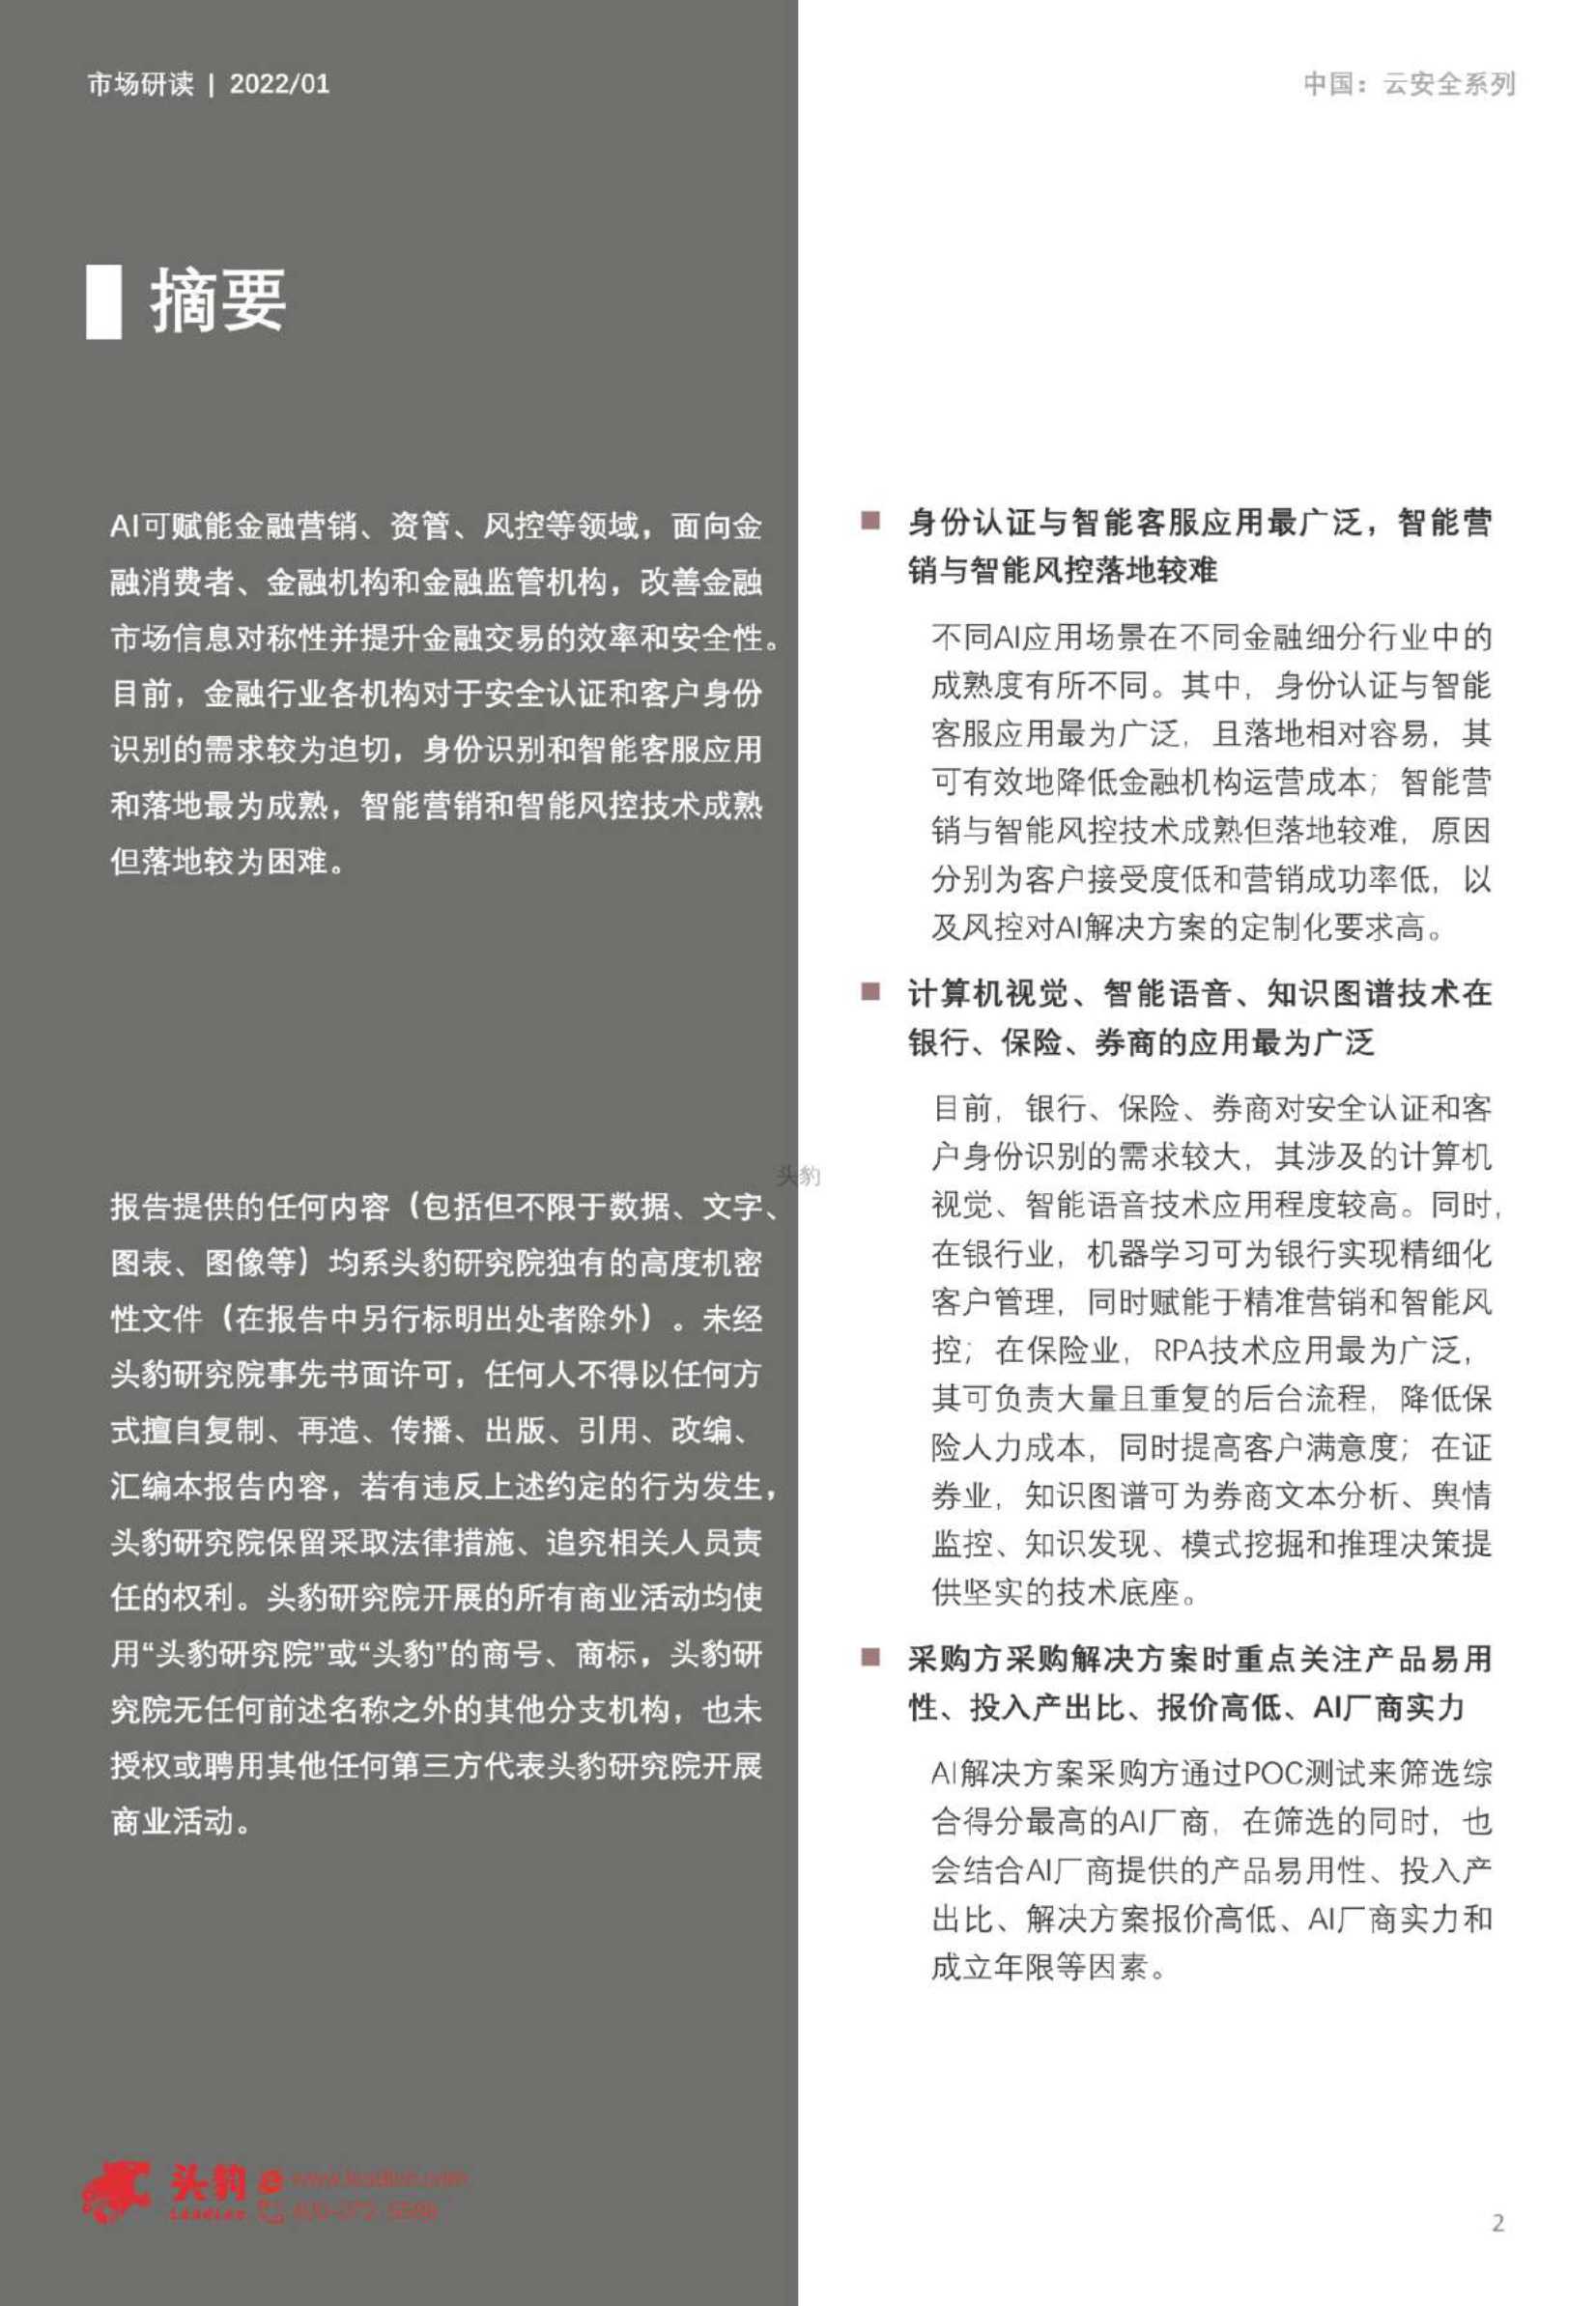 2022年中国金融AI解决方案市场追踪-2022.04-33页